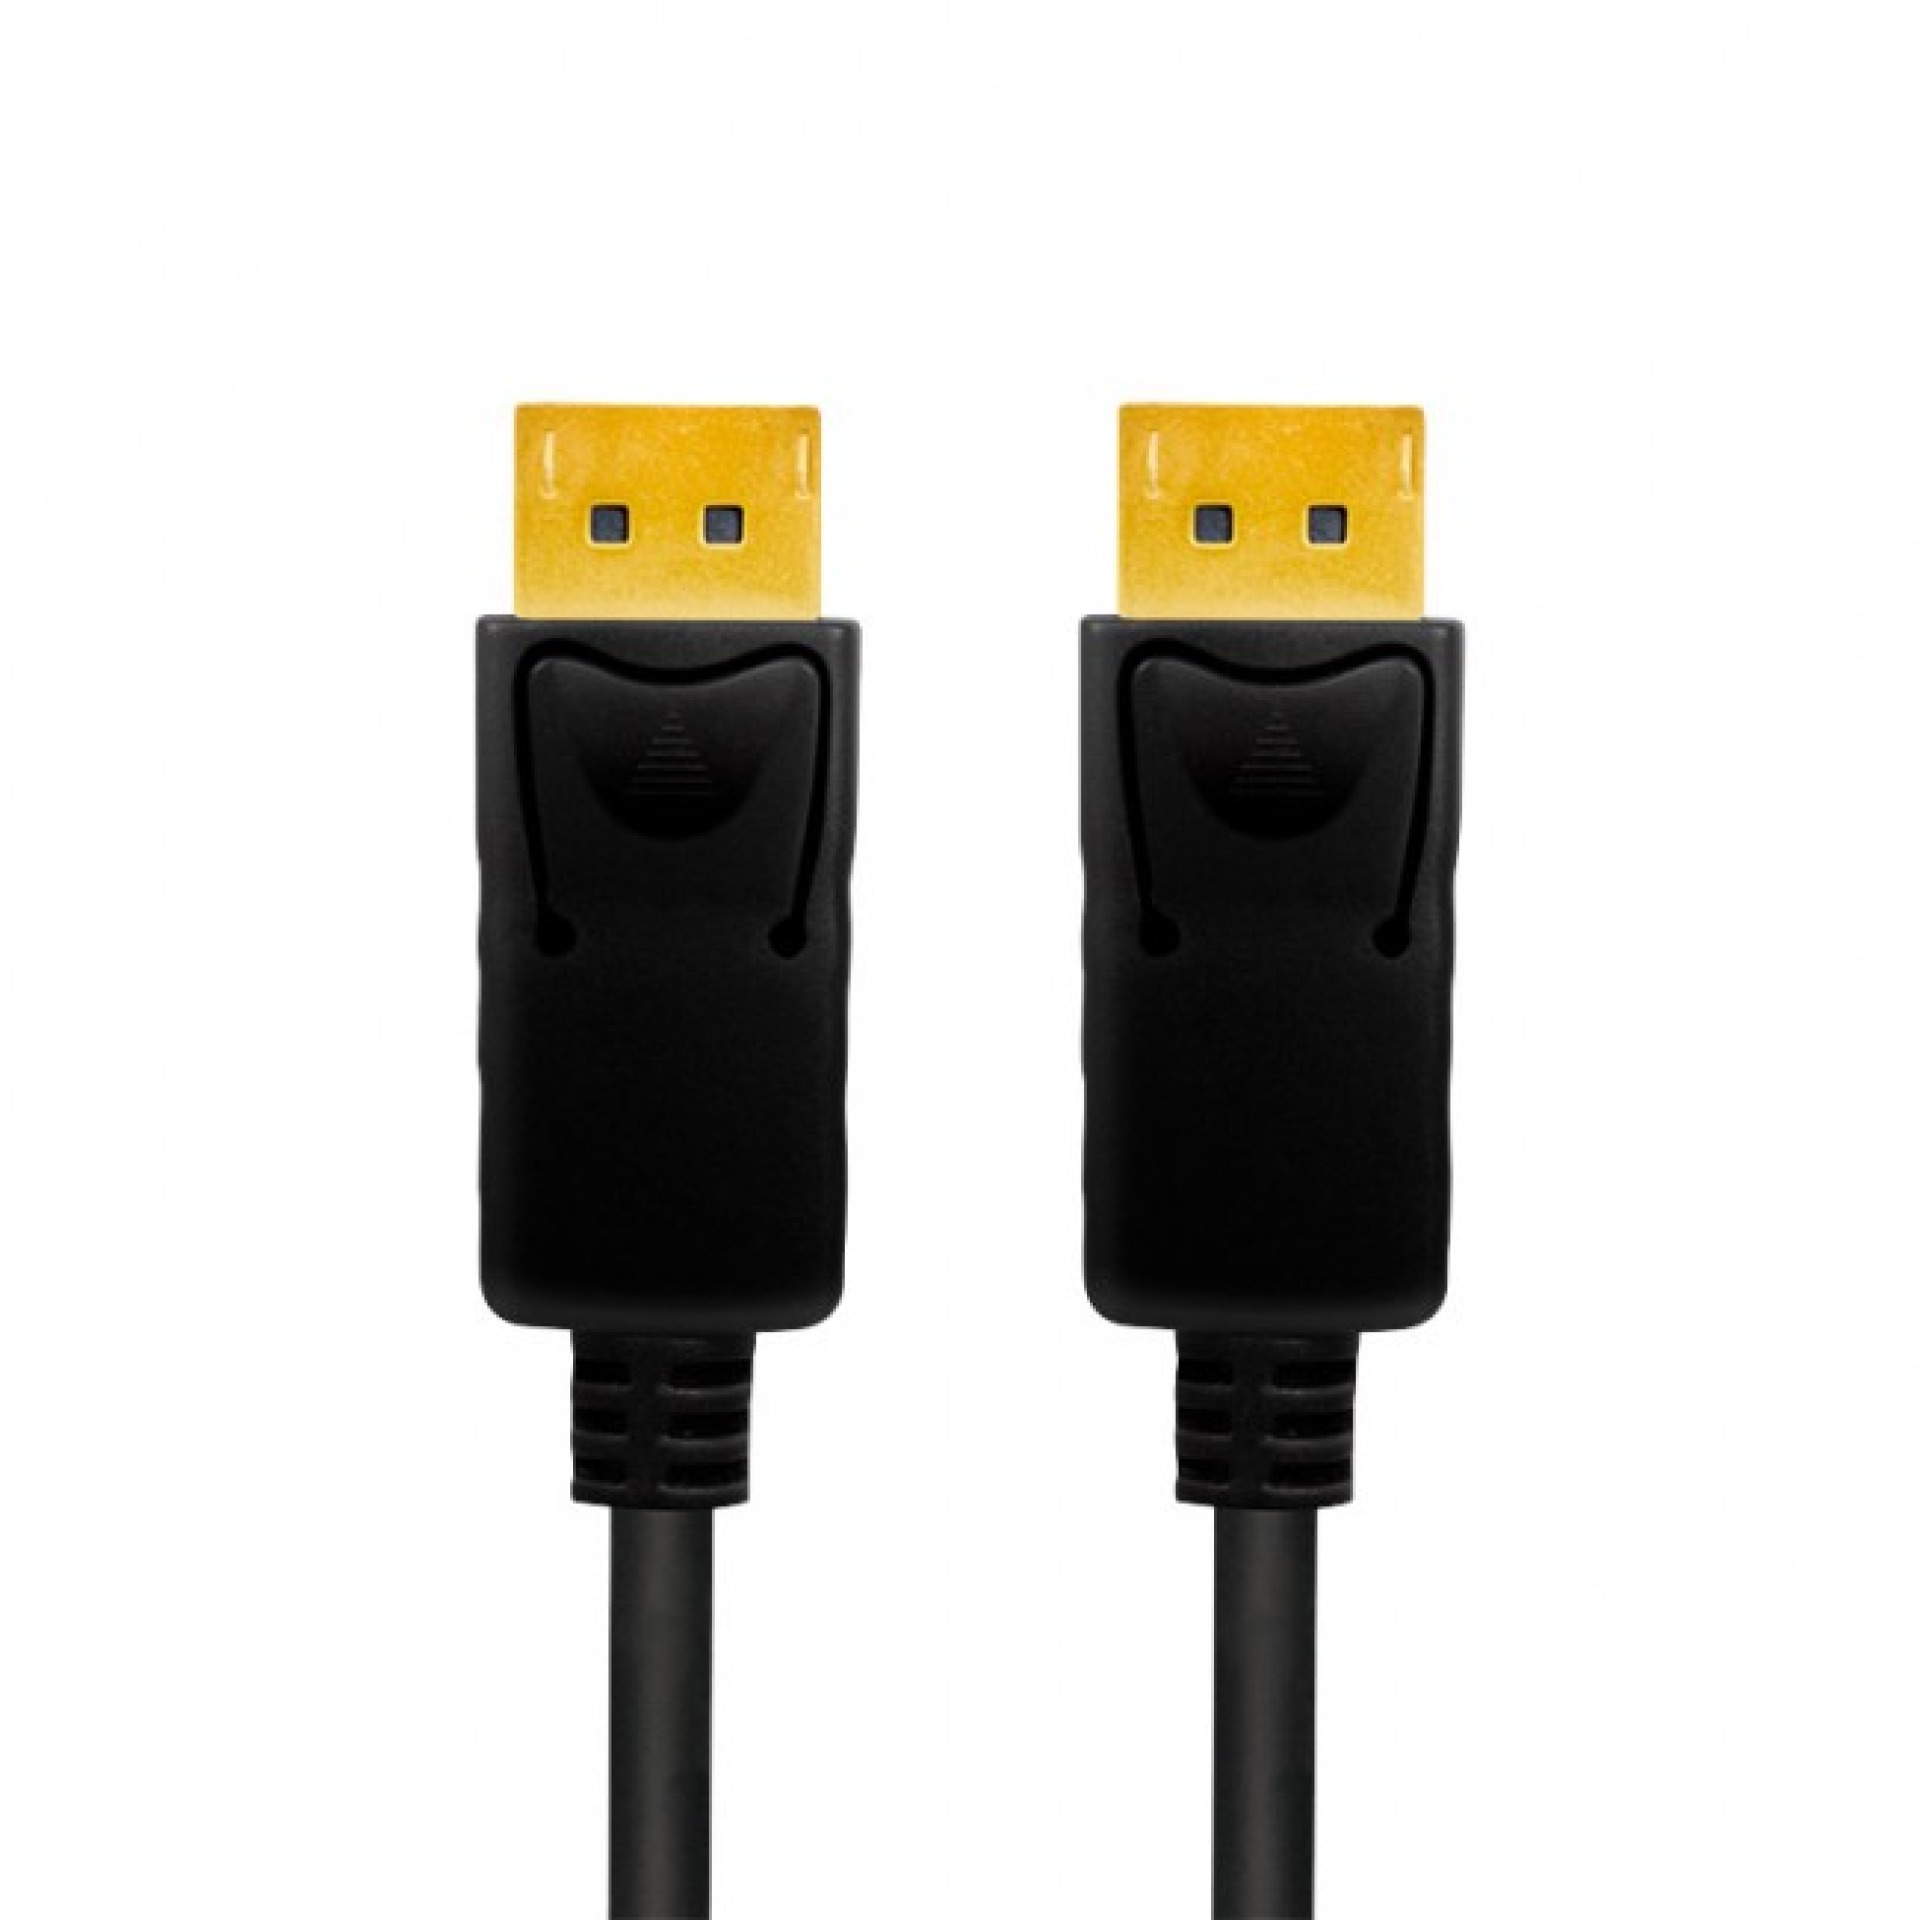 DisplayPort 1.4 Cable, M/M, 3m, black